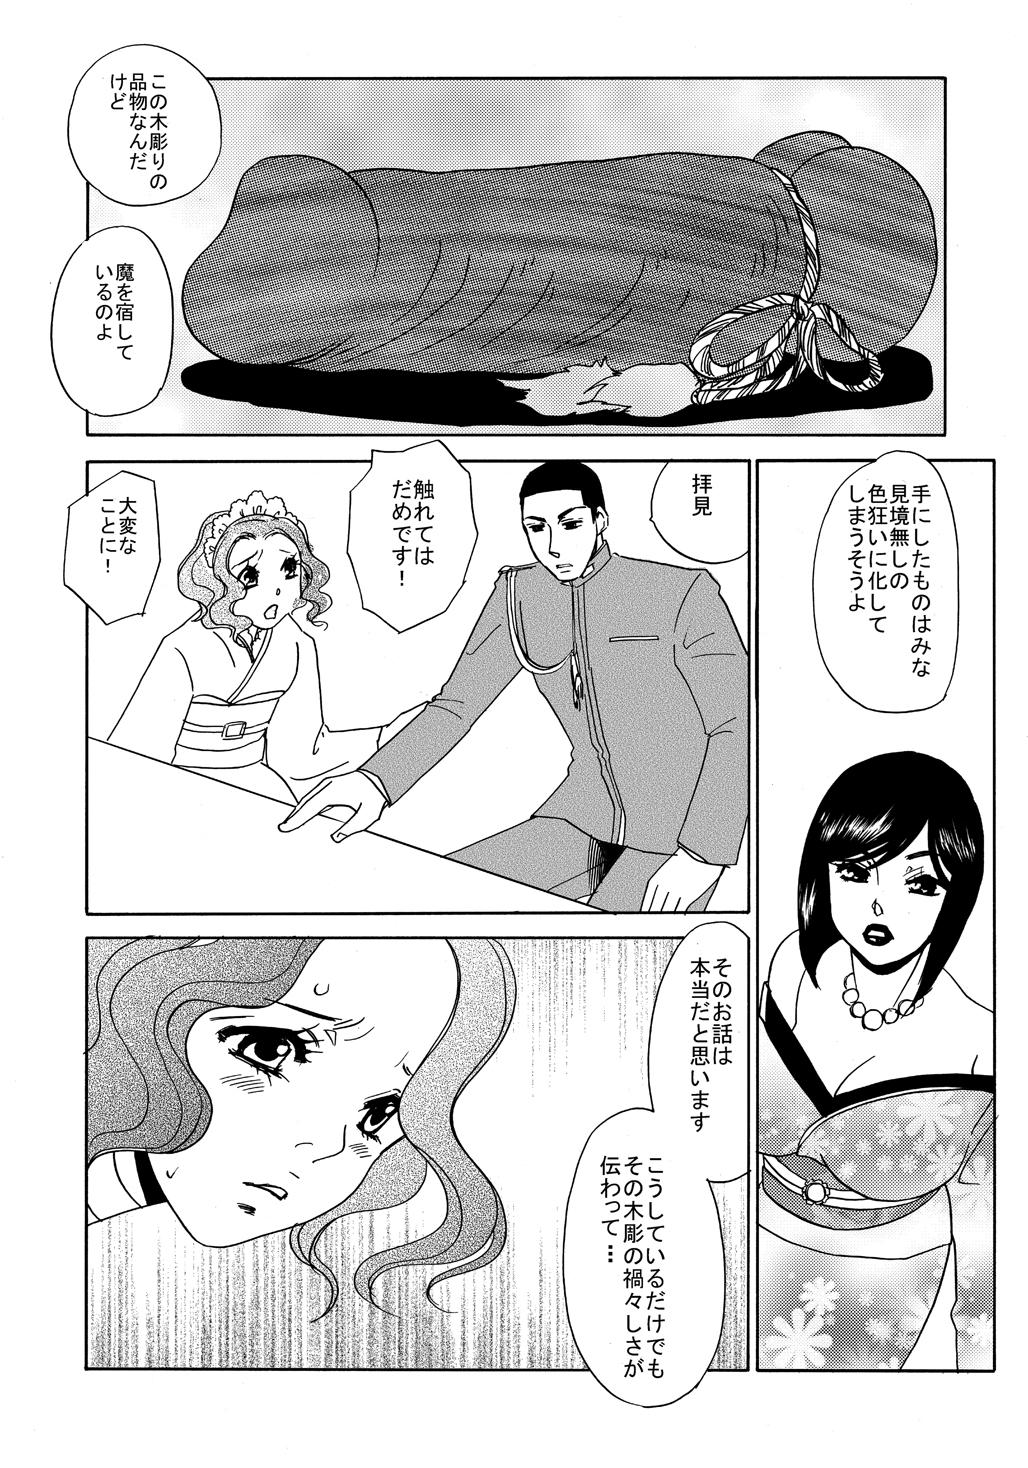 Coeds Koi Nurunuru To - Otome youkai zakuro Perfect Ass - Page 3